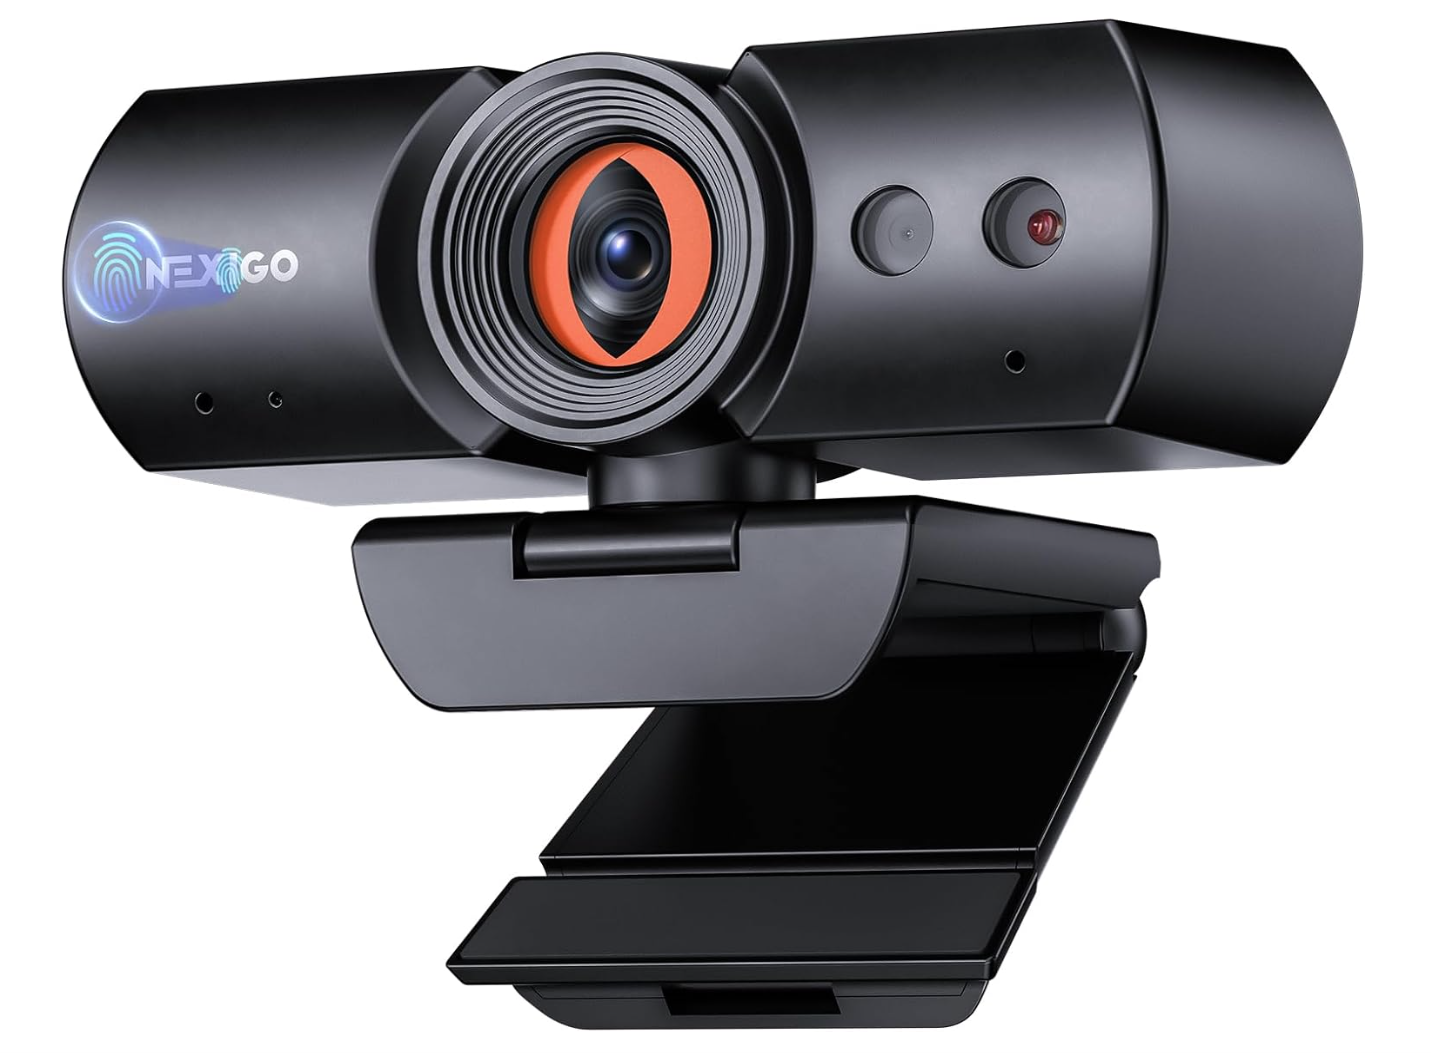 NexiGo HelloCam Pro - Best budget Windows Hello webcam